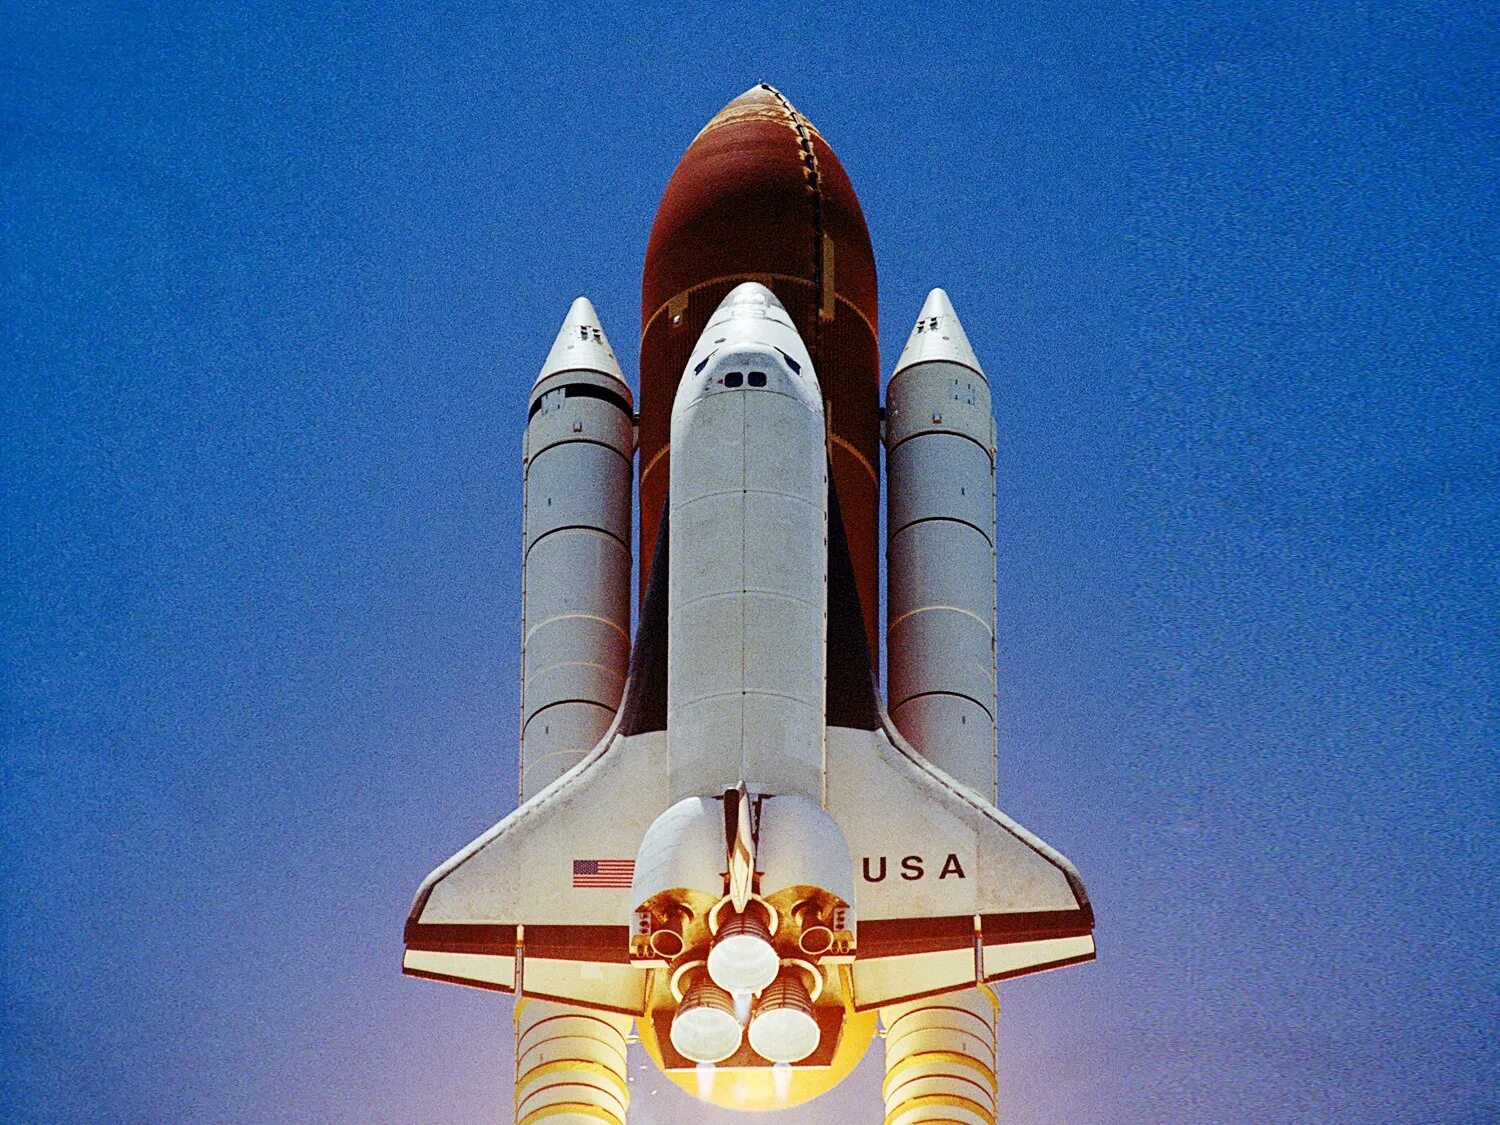 Первый космический челнок. Спейс шаттл 1981. Спейс шаттл космический корабль. Шаттл Колумбия 1981. Спэйс шаттл «Колумбия» 1981.